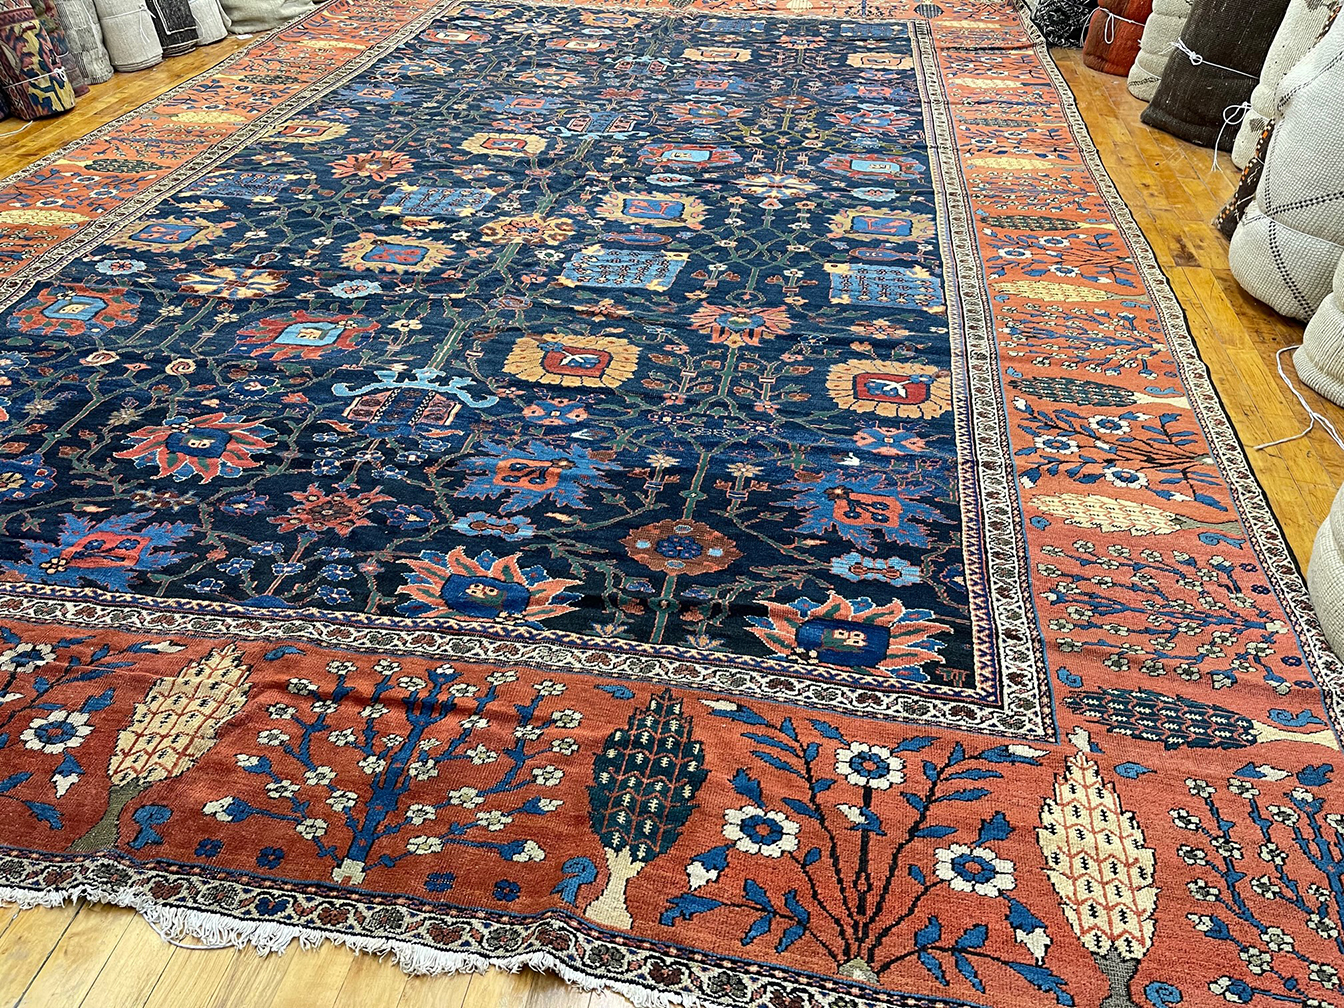 Antique sultan abad Carpet - # 80131